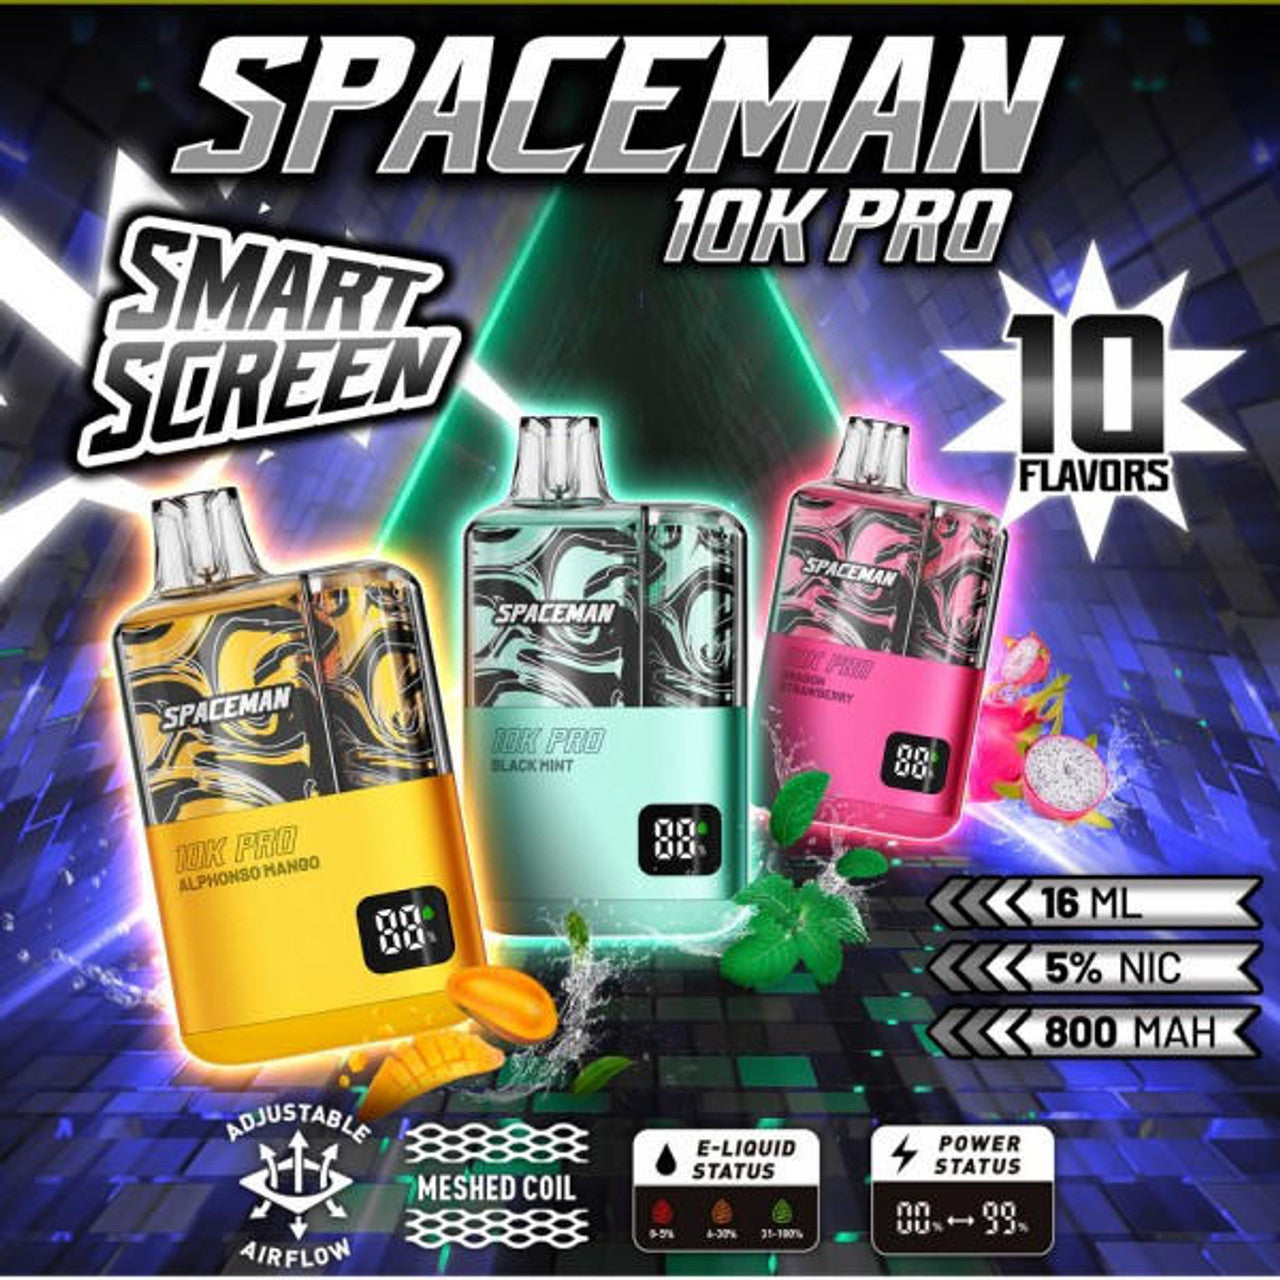 Spaceman Smok 10k Pro Disposable Vapes